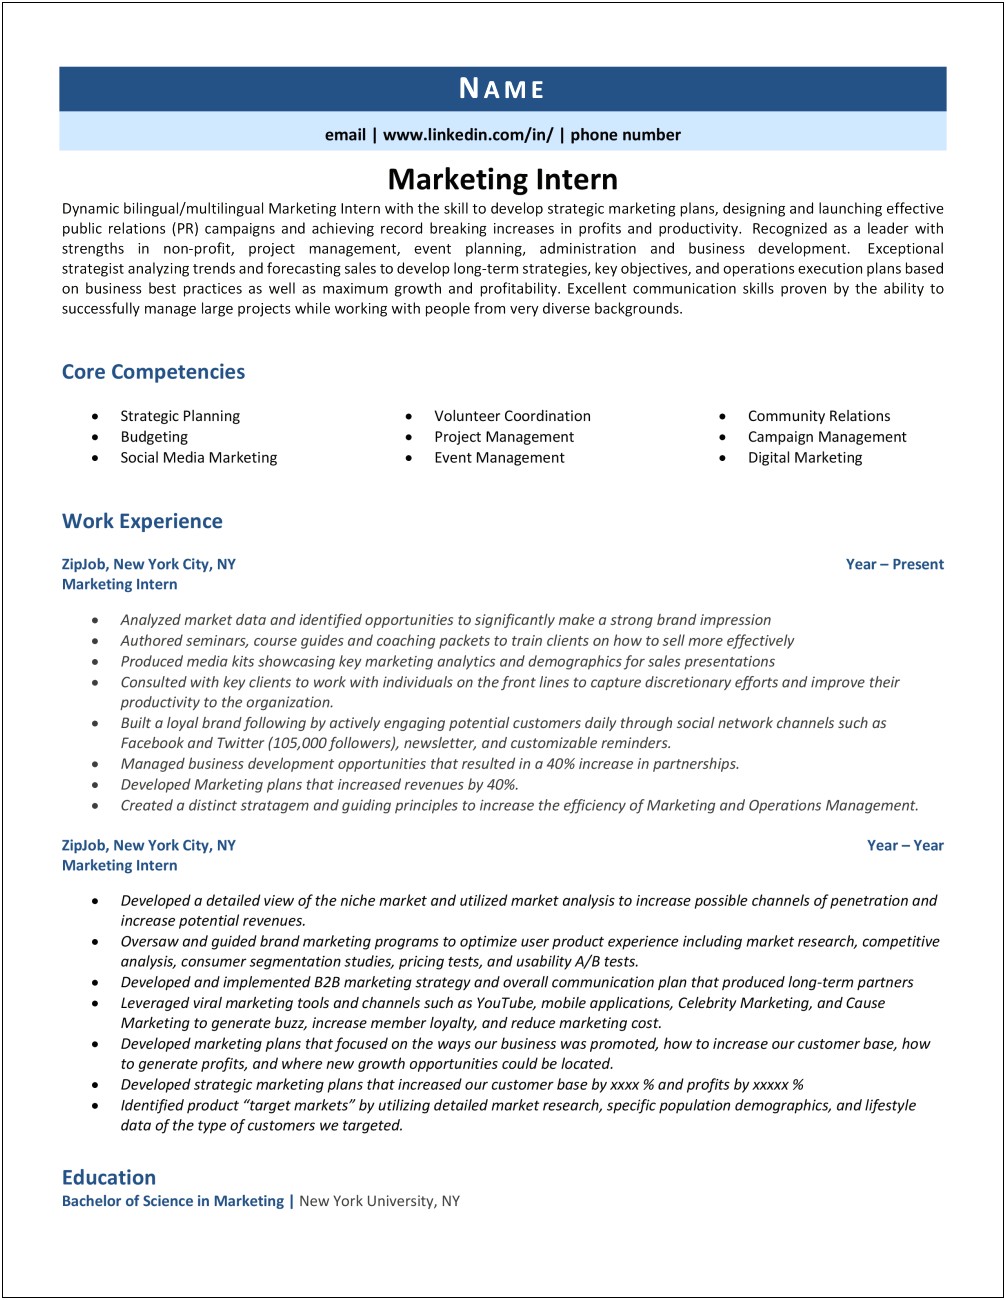 Description Of Marketing Internship For Resume